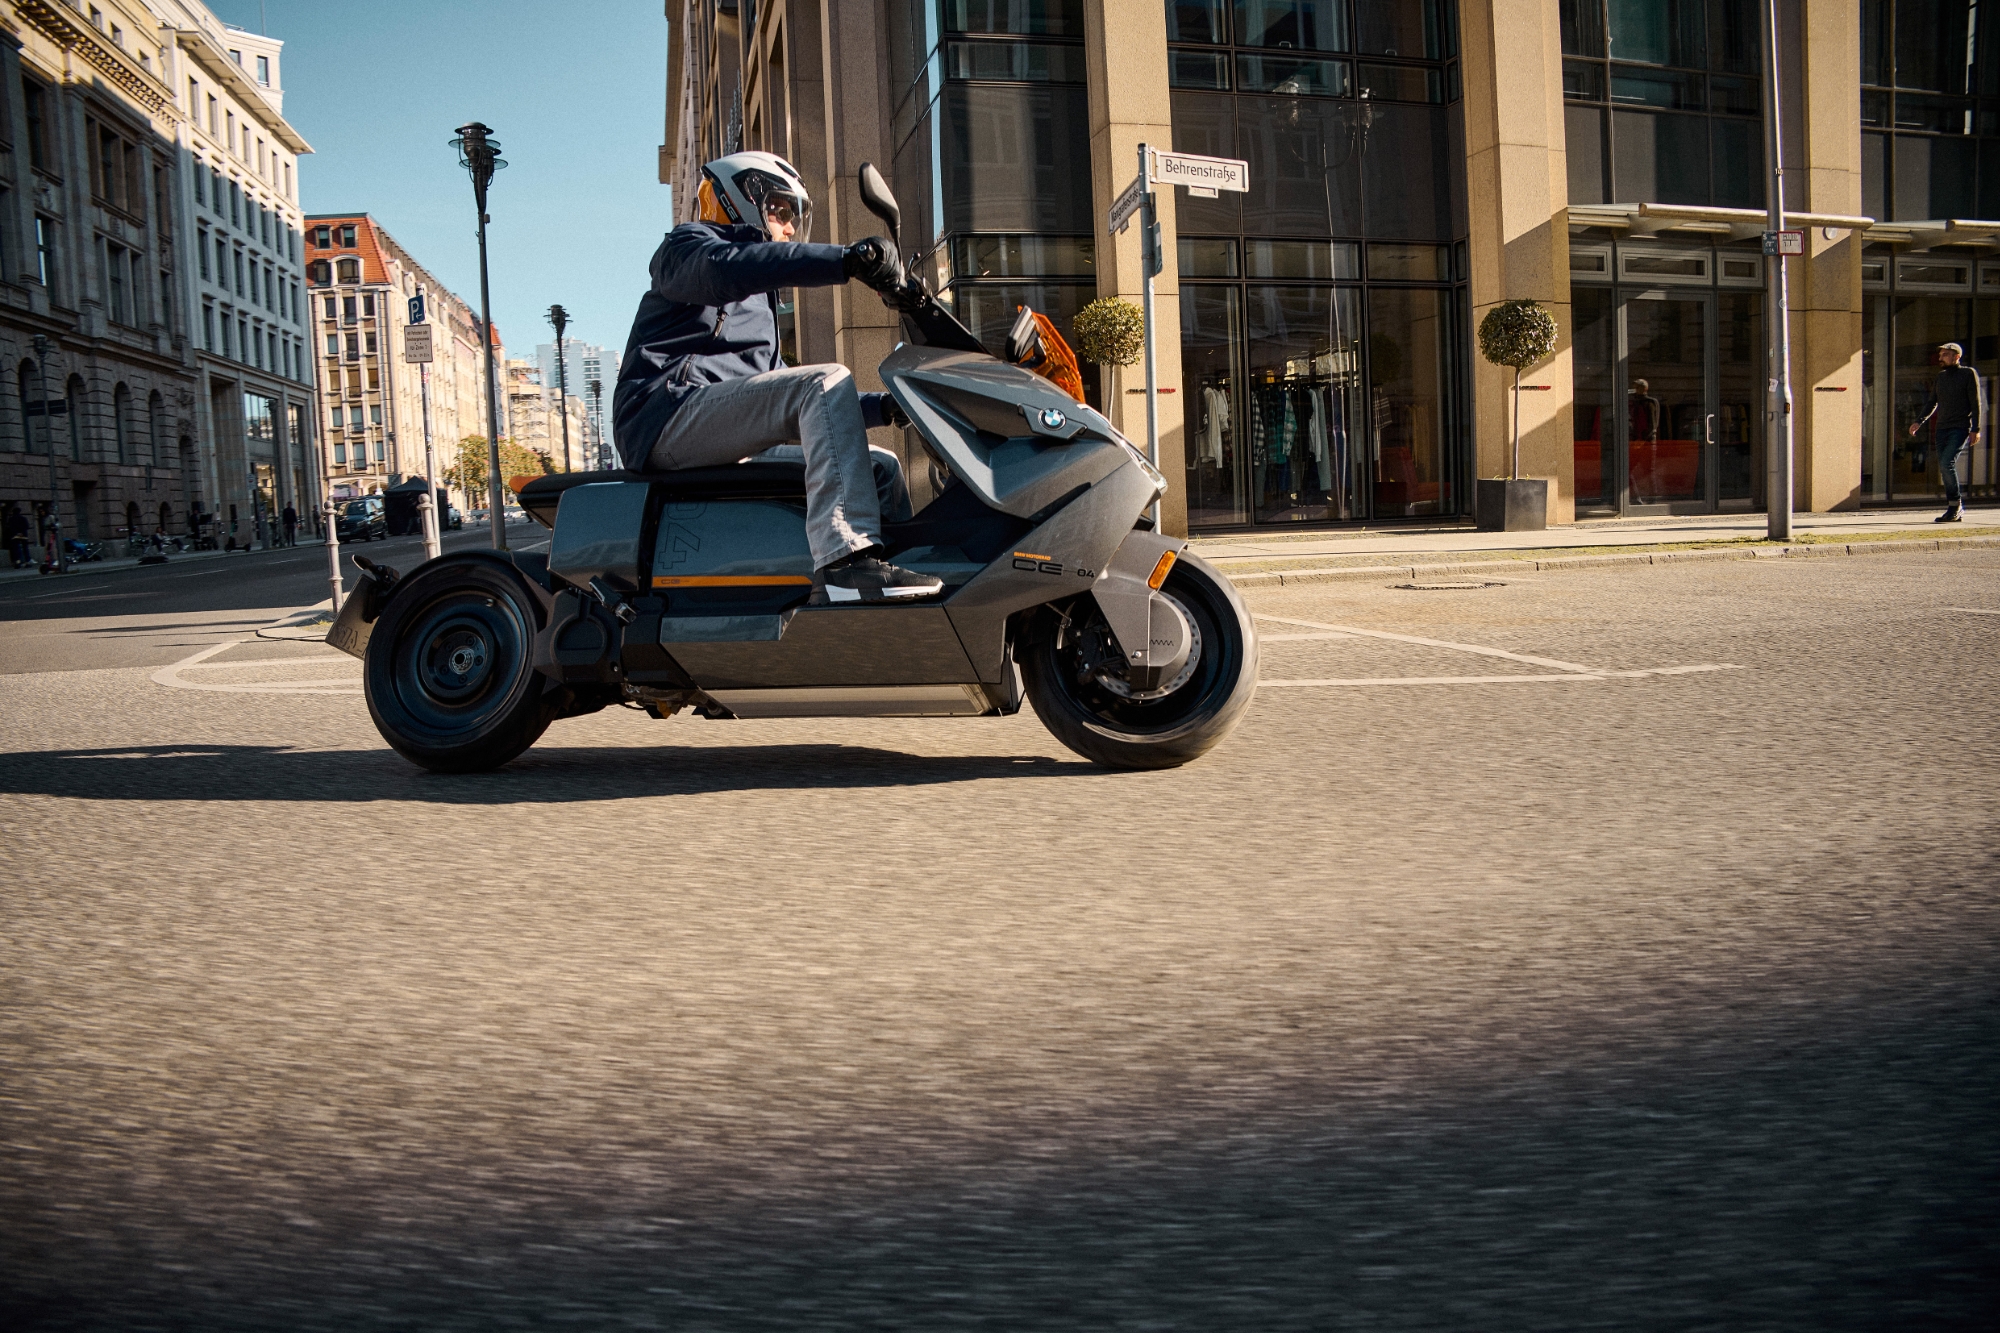 BMW startet die Serienproduktion des Elektrorollers Motorrad CE 04 mit einer Reichweite von 130 km und einer Beschleunigung auf 50 km/h in 2,6 Sekunden